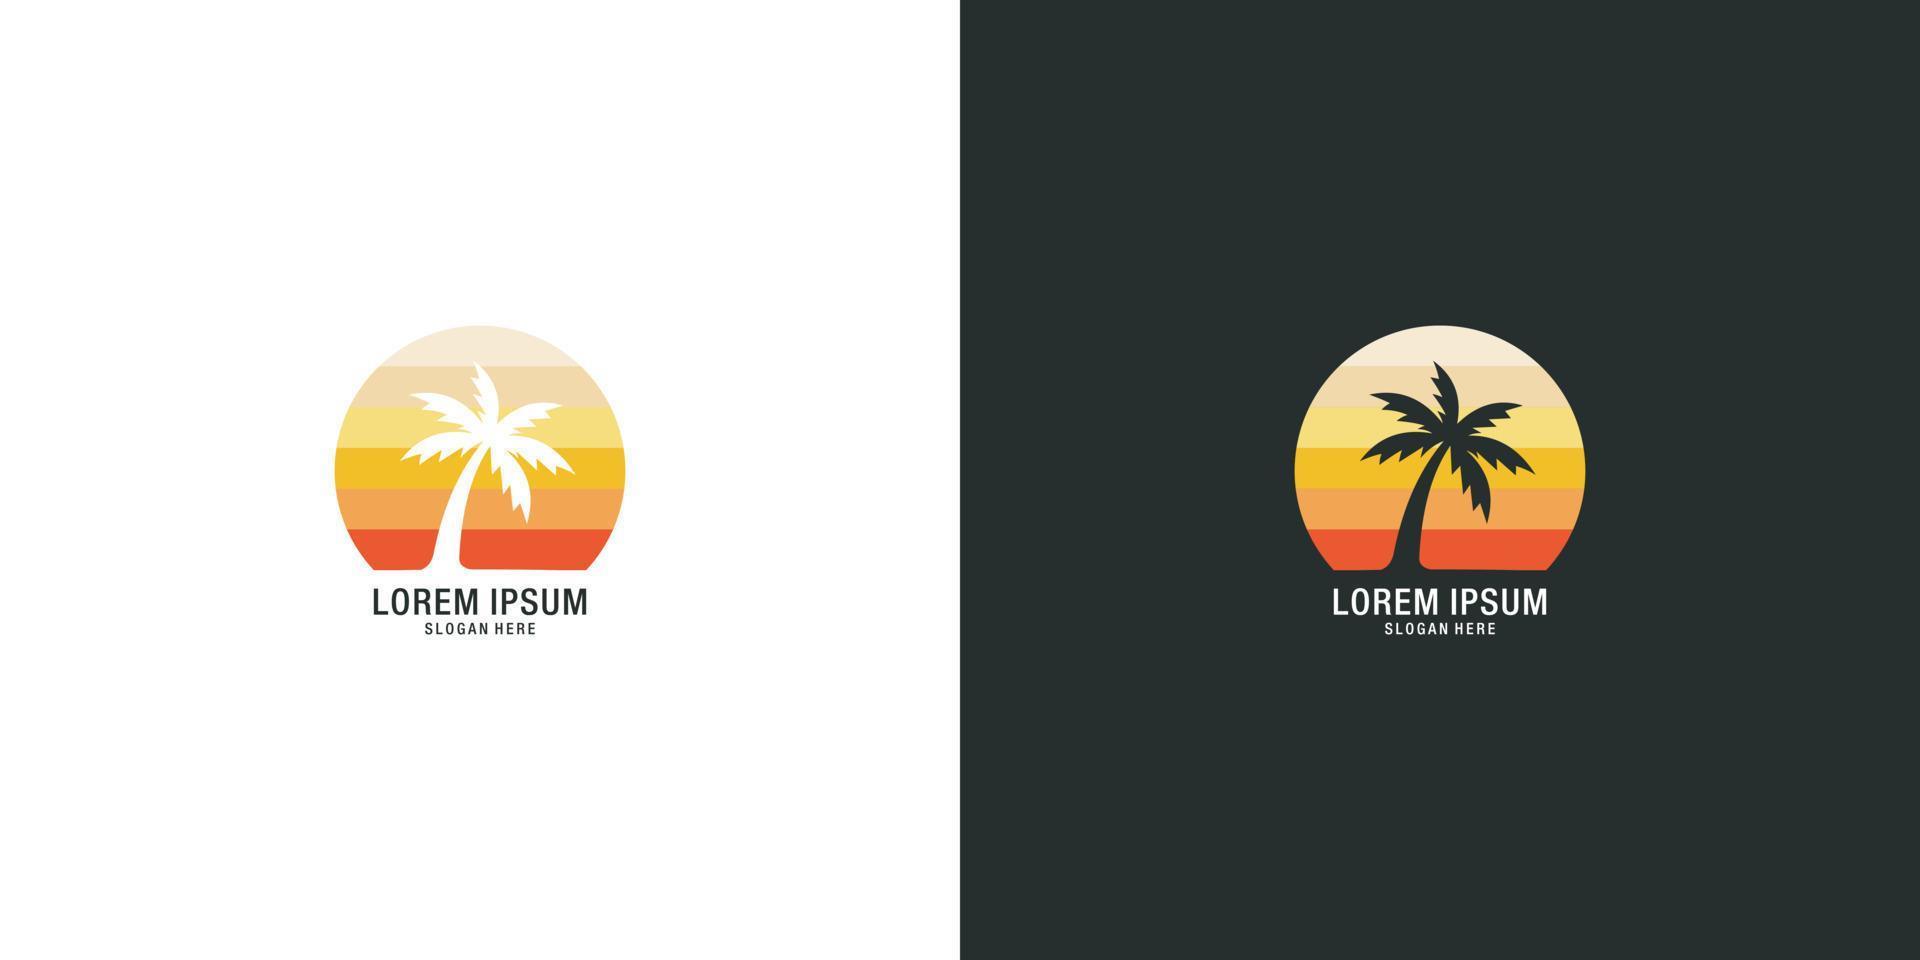 palmboom logo vector ontwerp